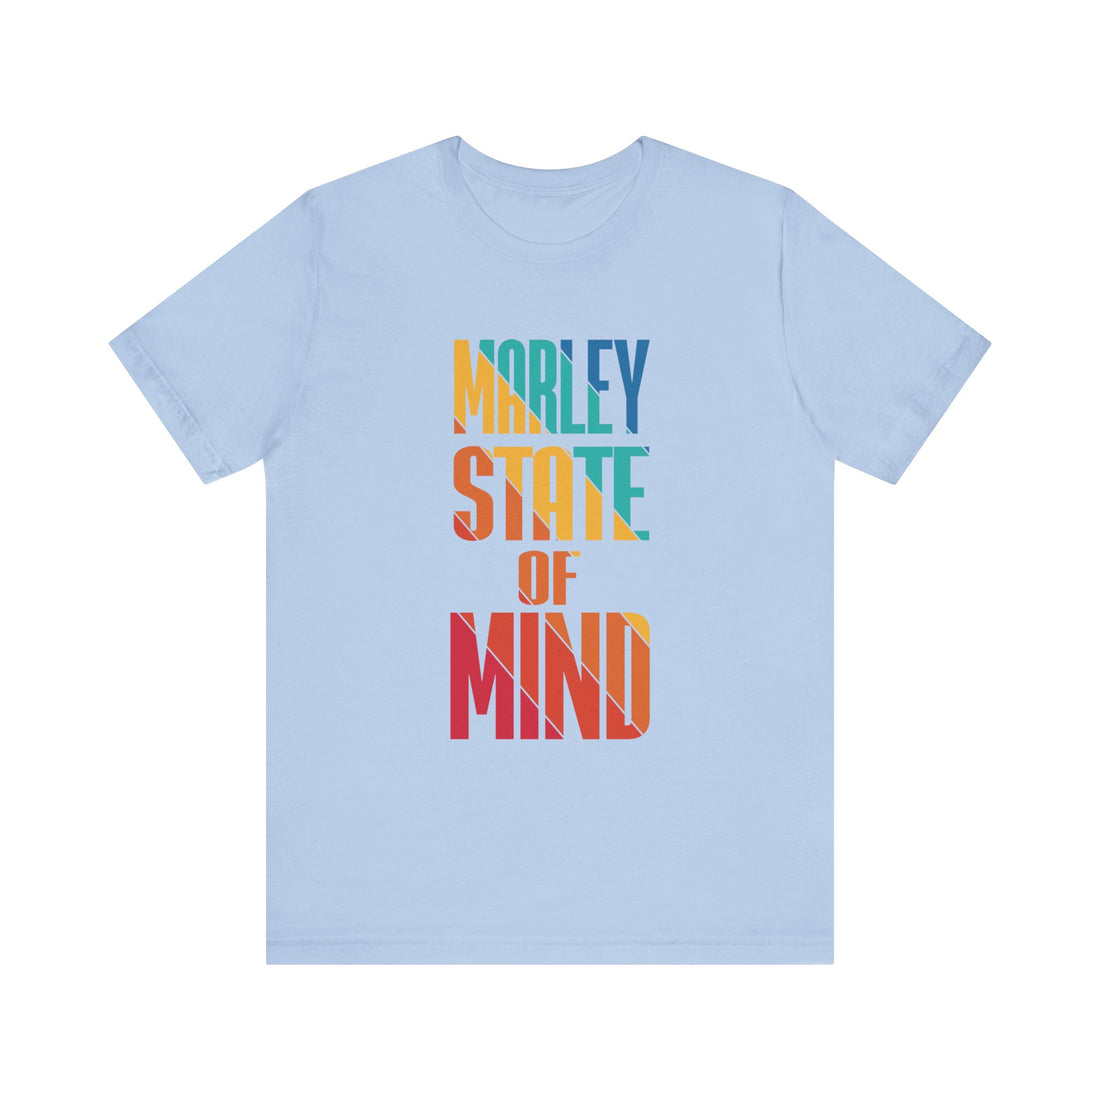 Mint Marley Jersey Tee & Tye Dye Rasta Board Shorts Combo Pack